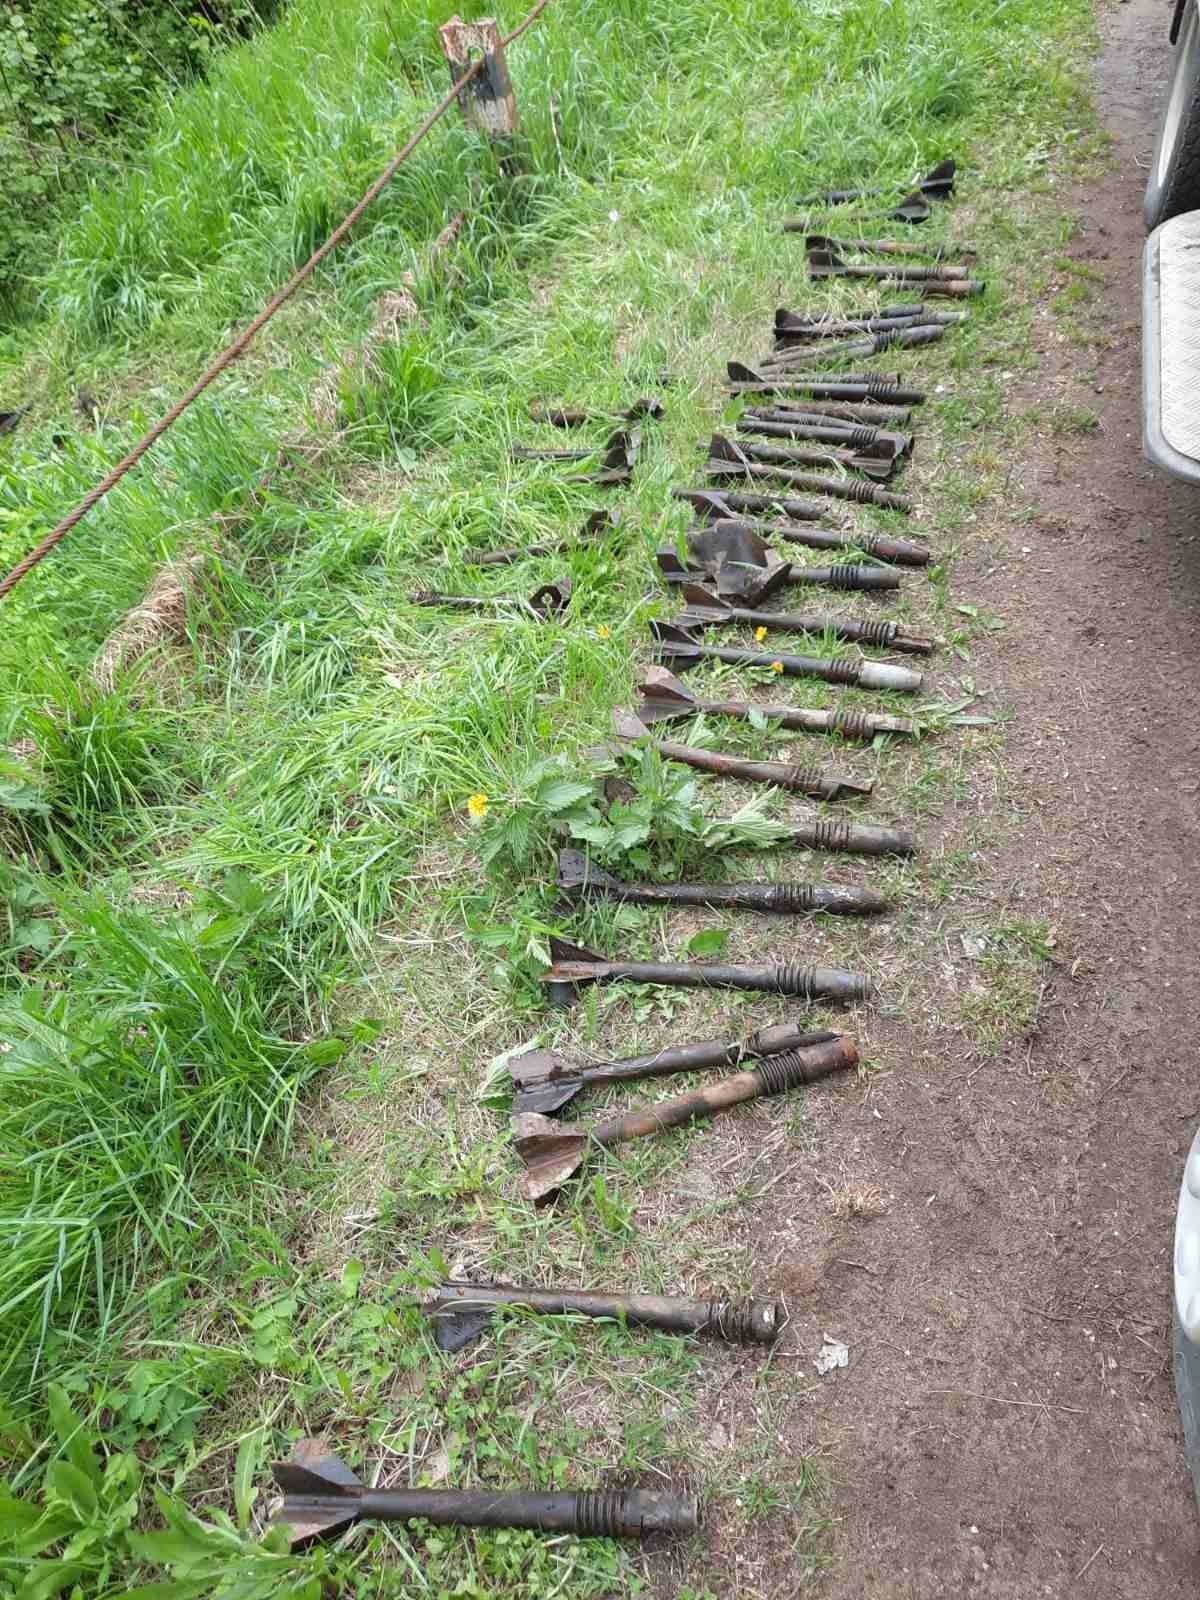 Фрагменты 60 снарядов нашли в деревенском пруду недалеко от Пугачево в Удмуртии